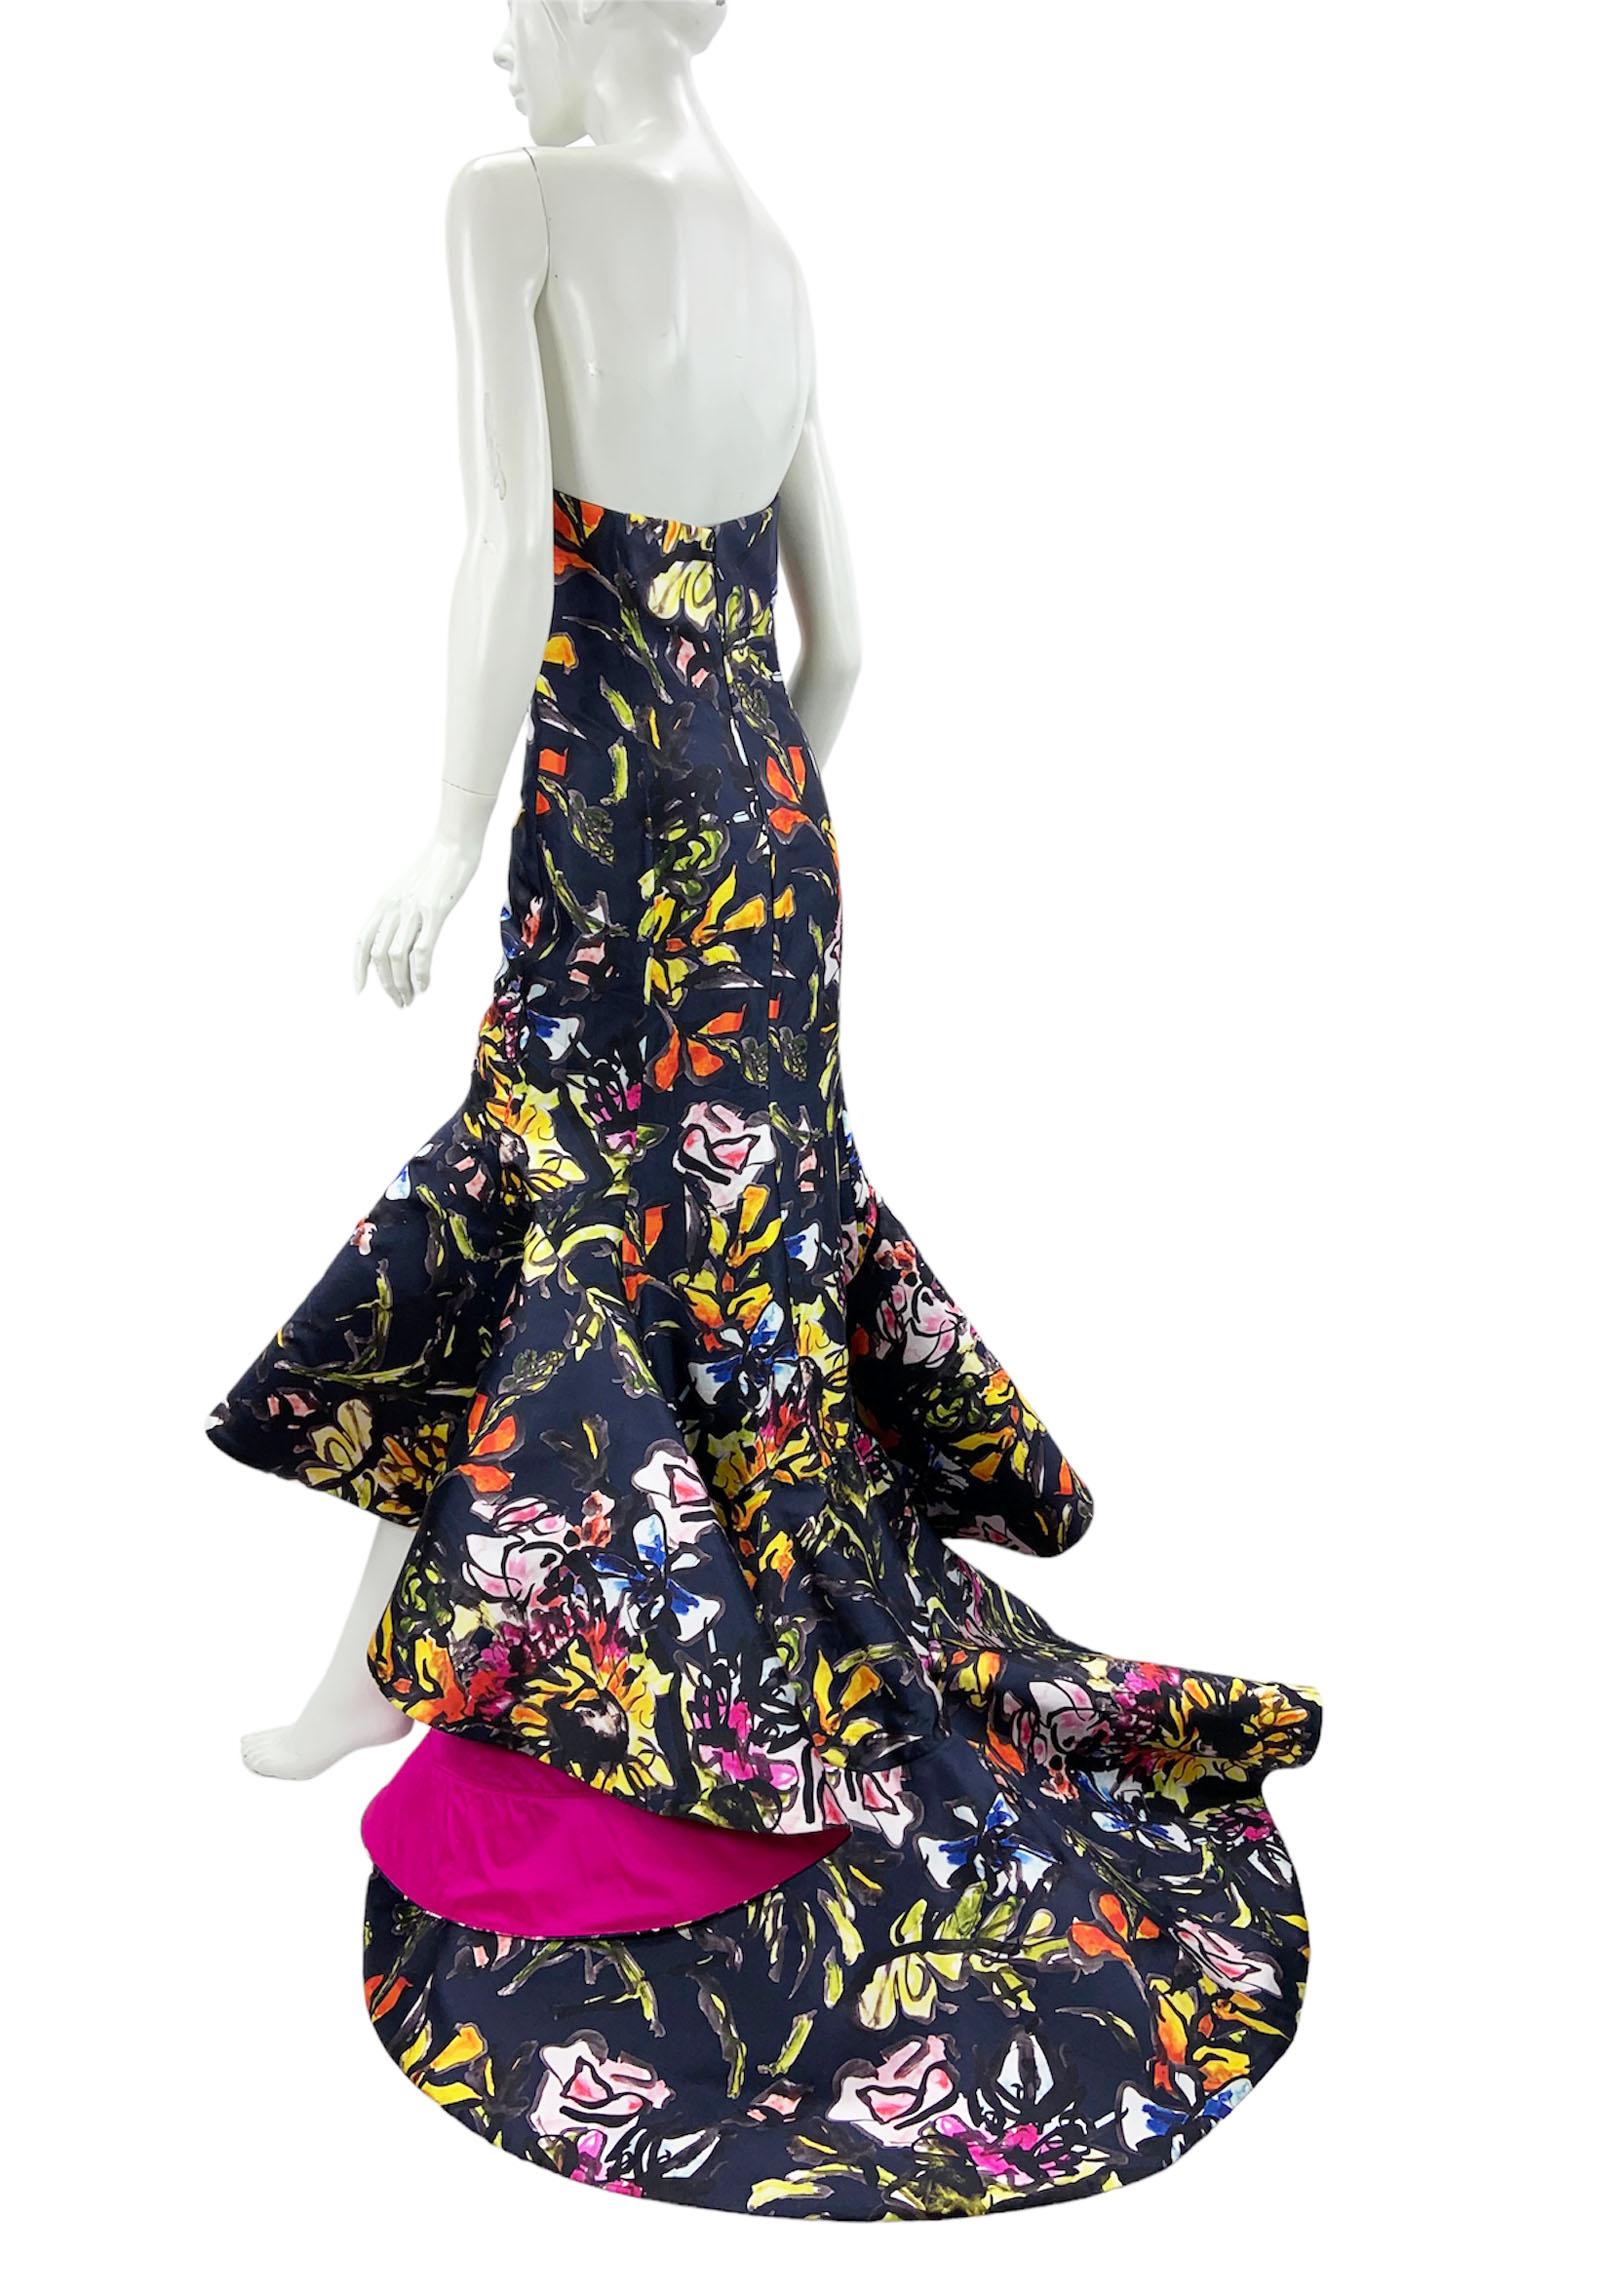 Women's Oscar de la Renta PF 2015 Floral Printed High-Low Corset Dress Gown US size 6 For Sale